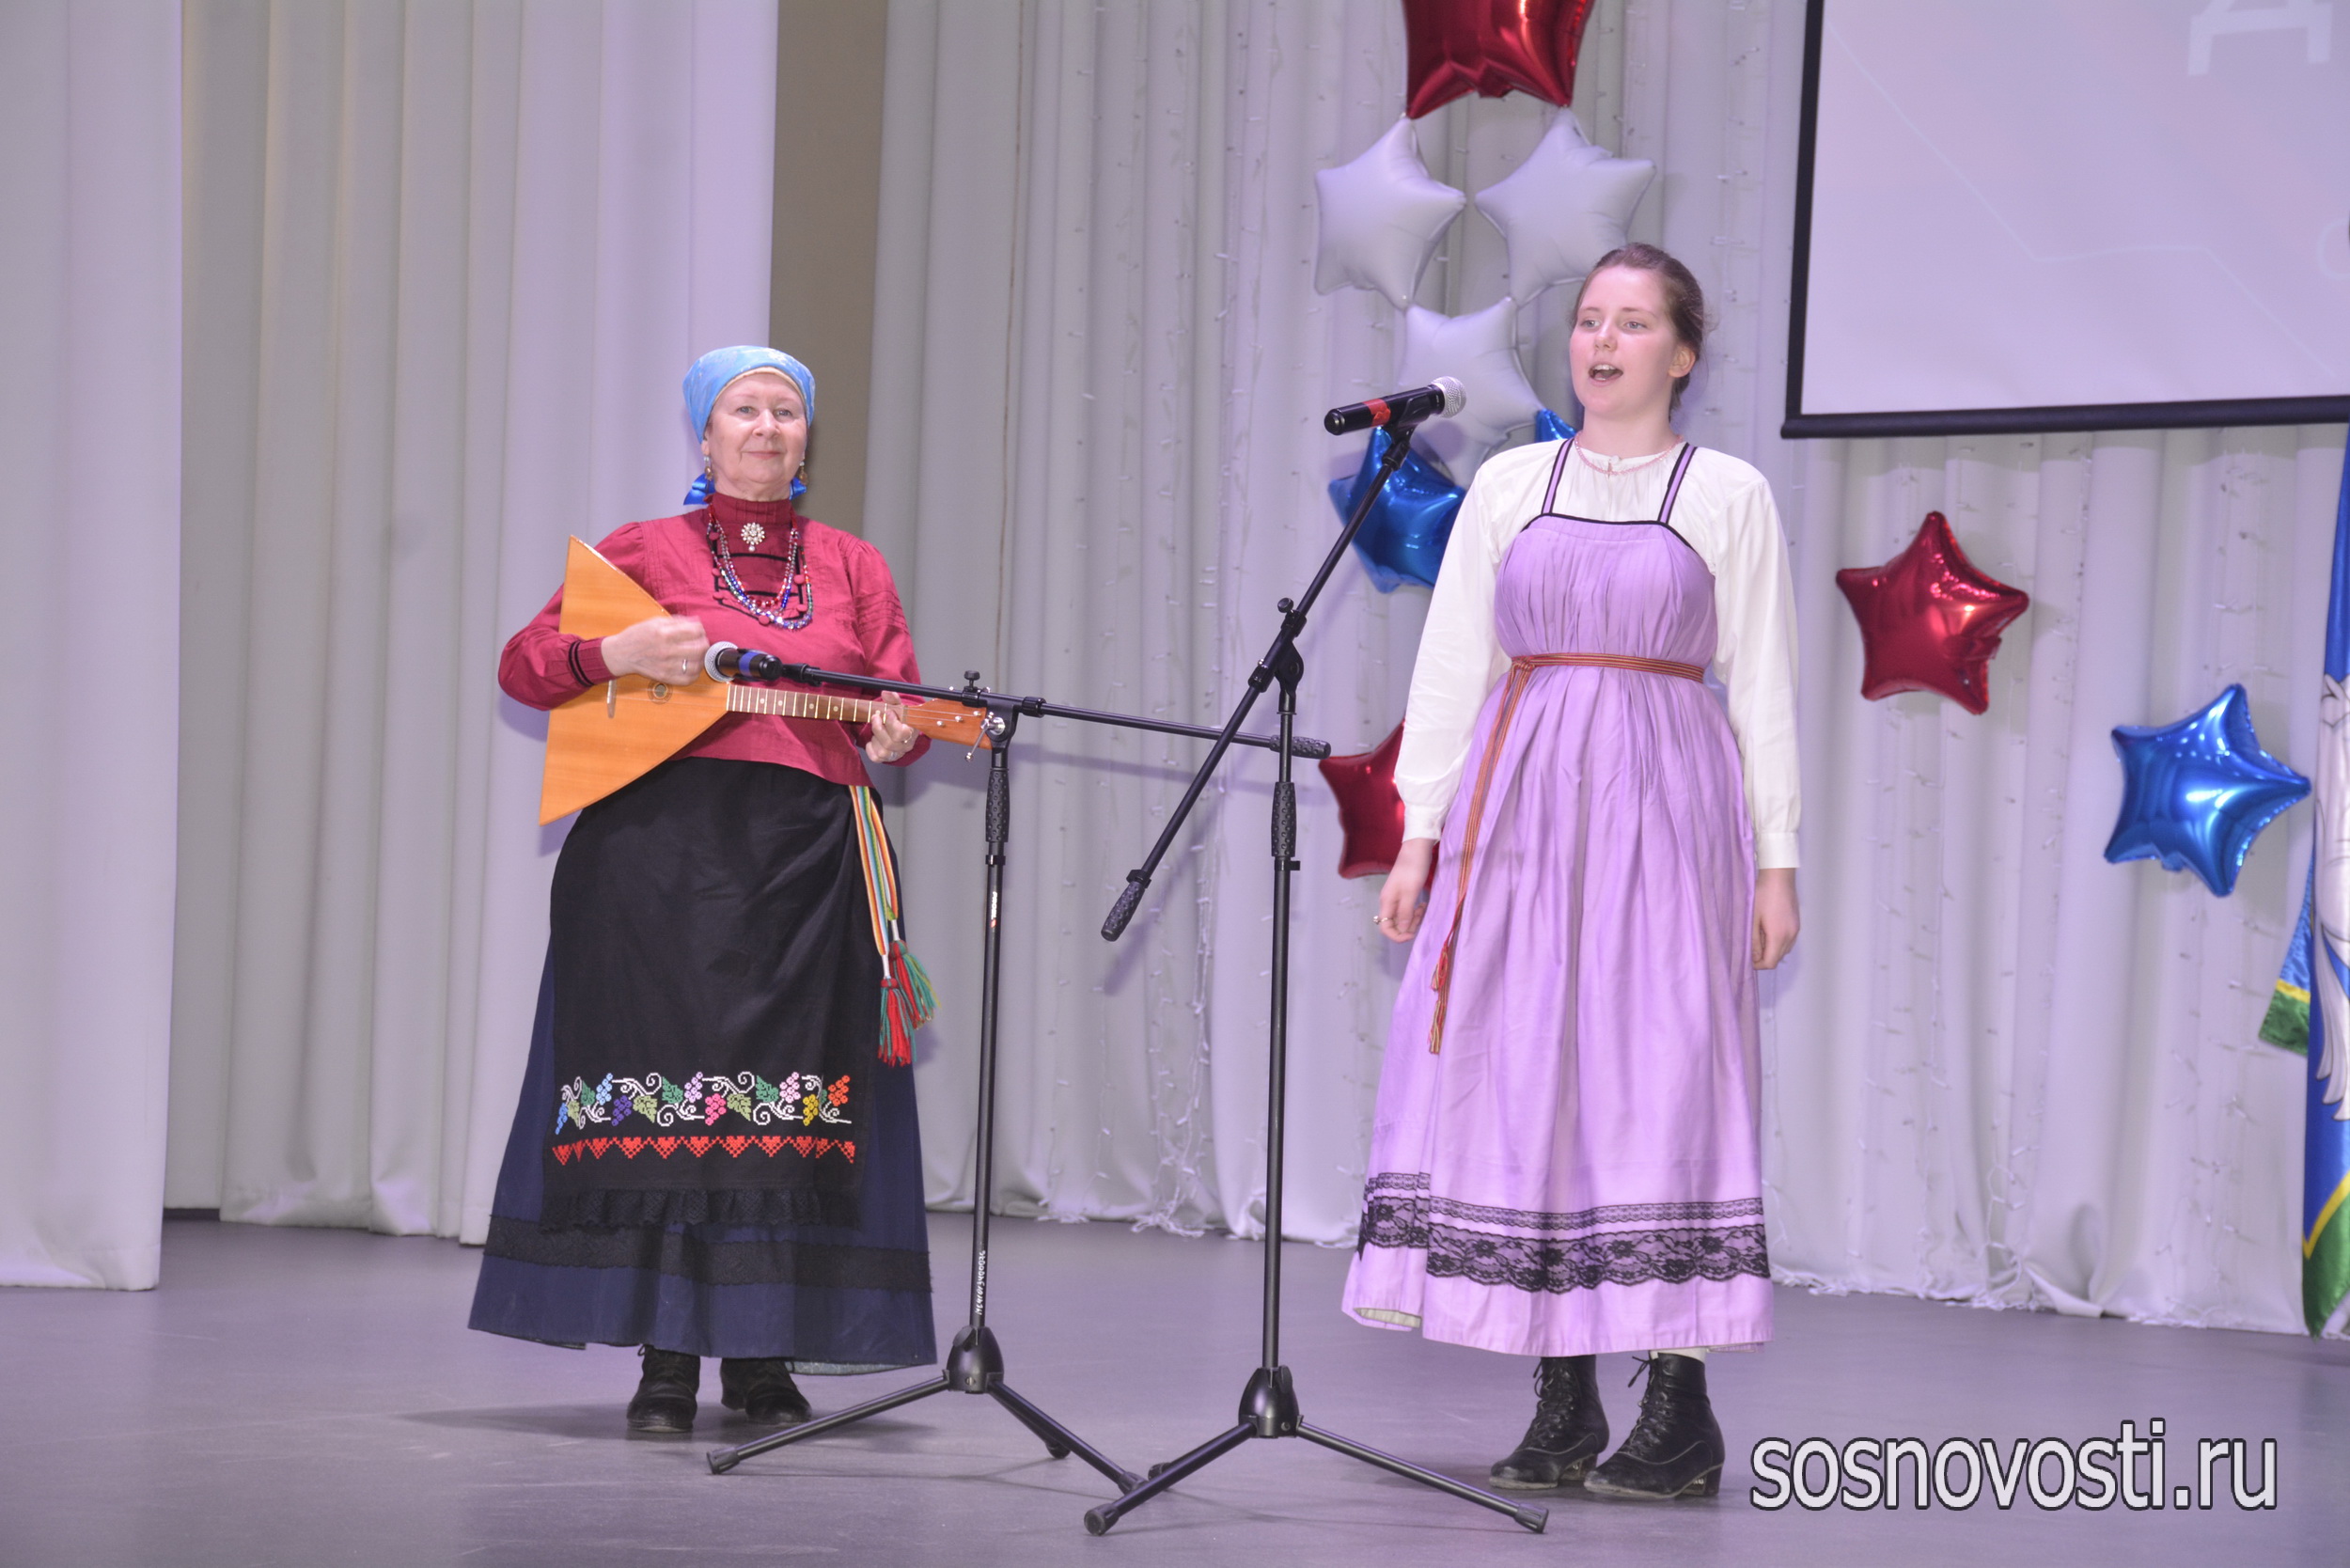 Парад достижений: в Сосновском районе наградили лучших учеников